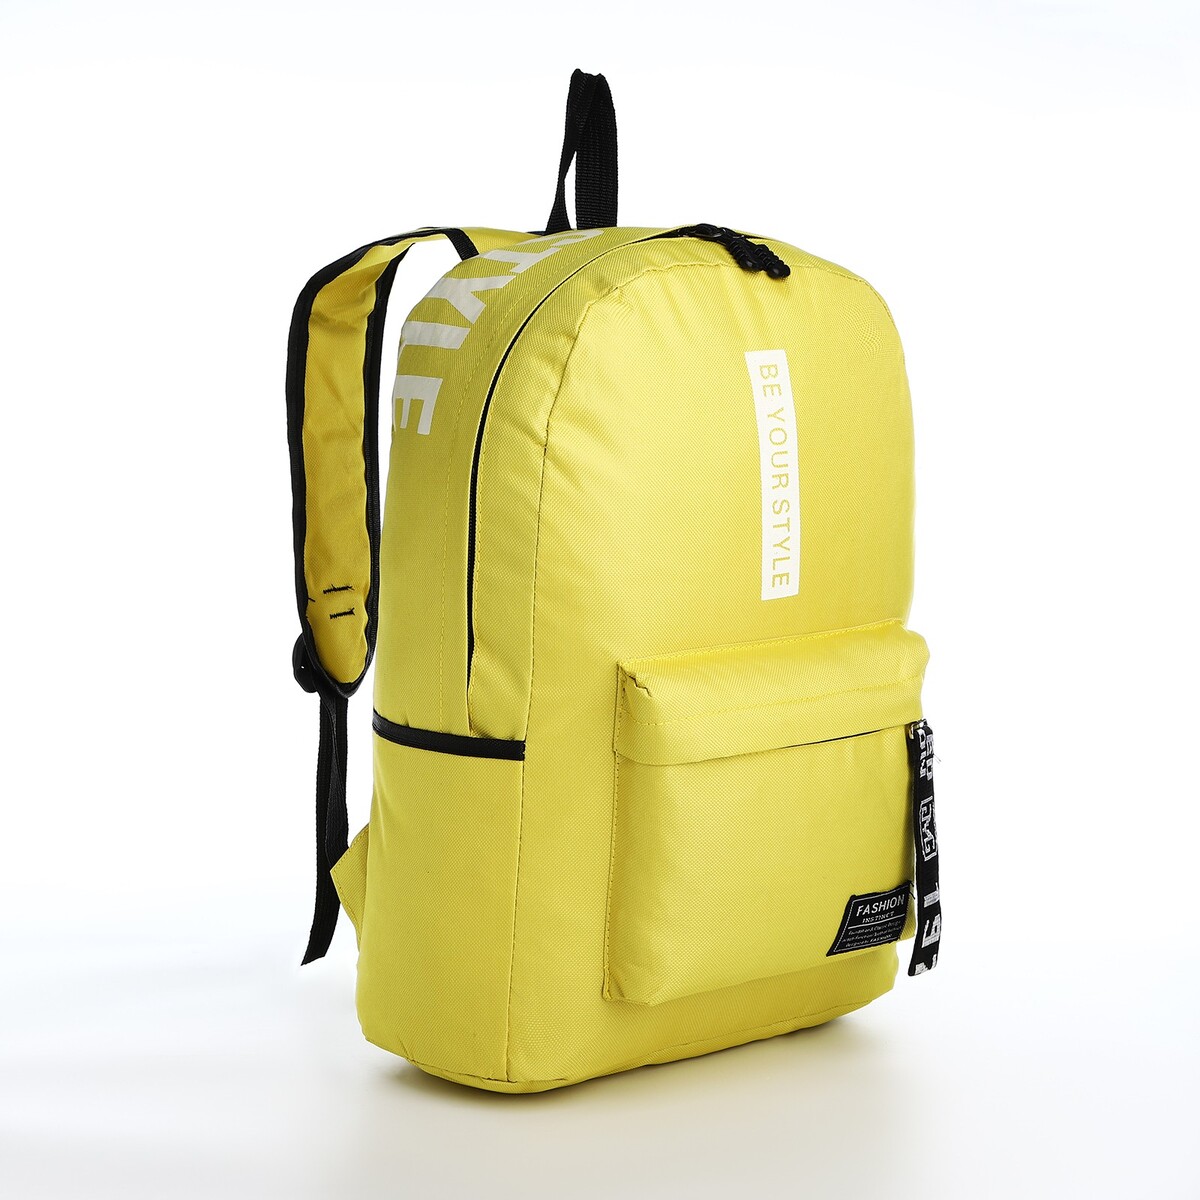 Рюкзак на молнии, наружный карман, 2 боковых кармана, цвет желтый рюкзак отдел на молнии наружный карман 2 боковых кармана кошелёк серый